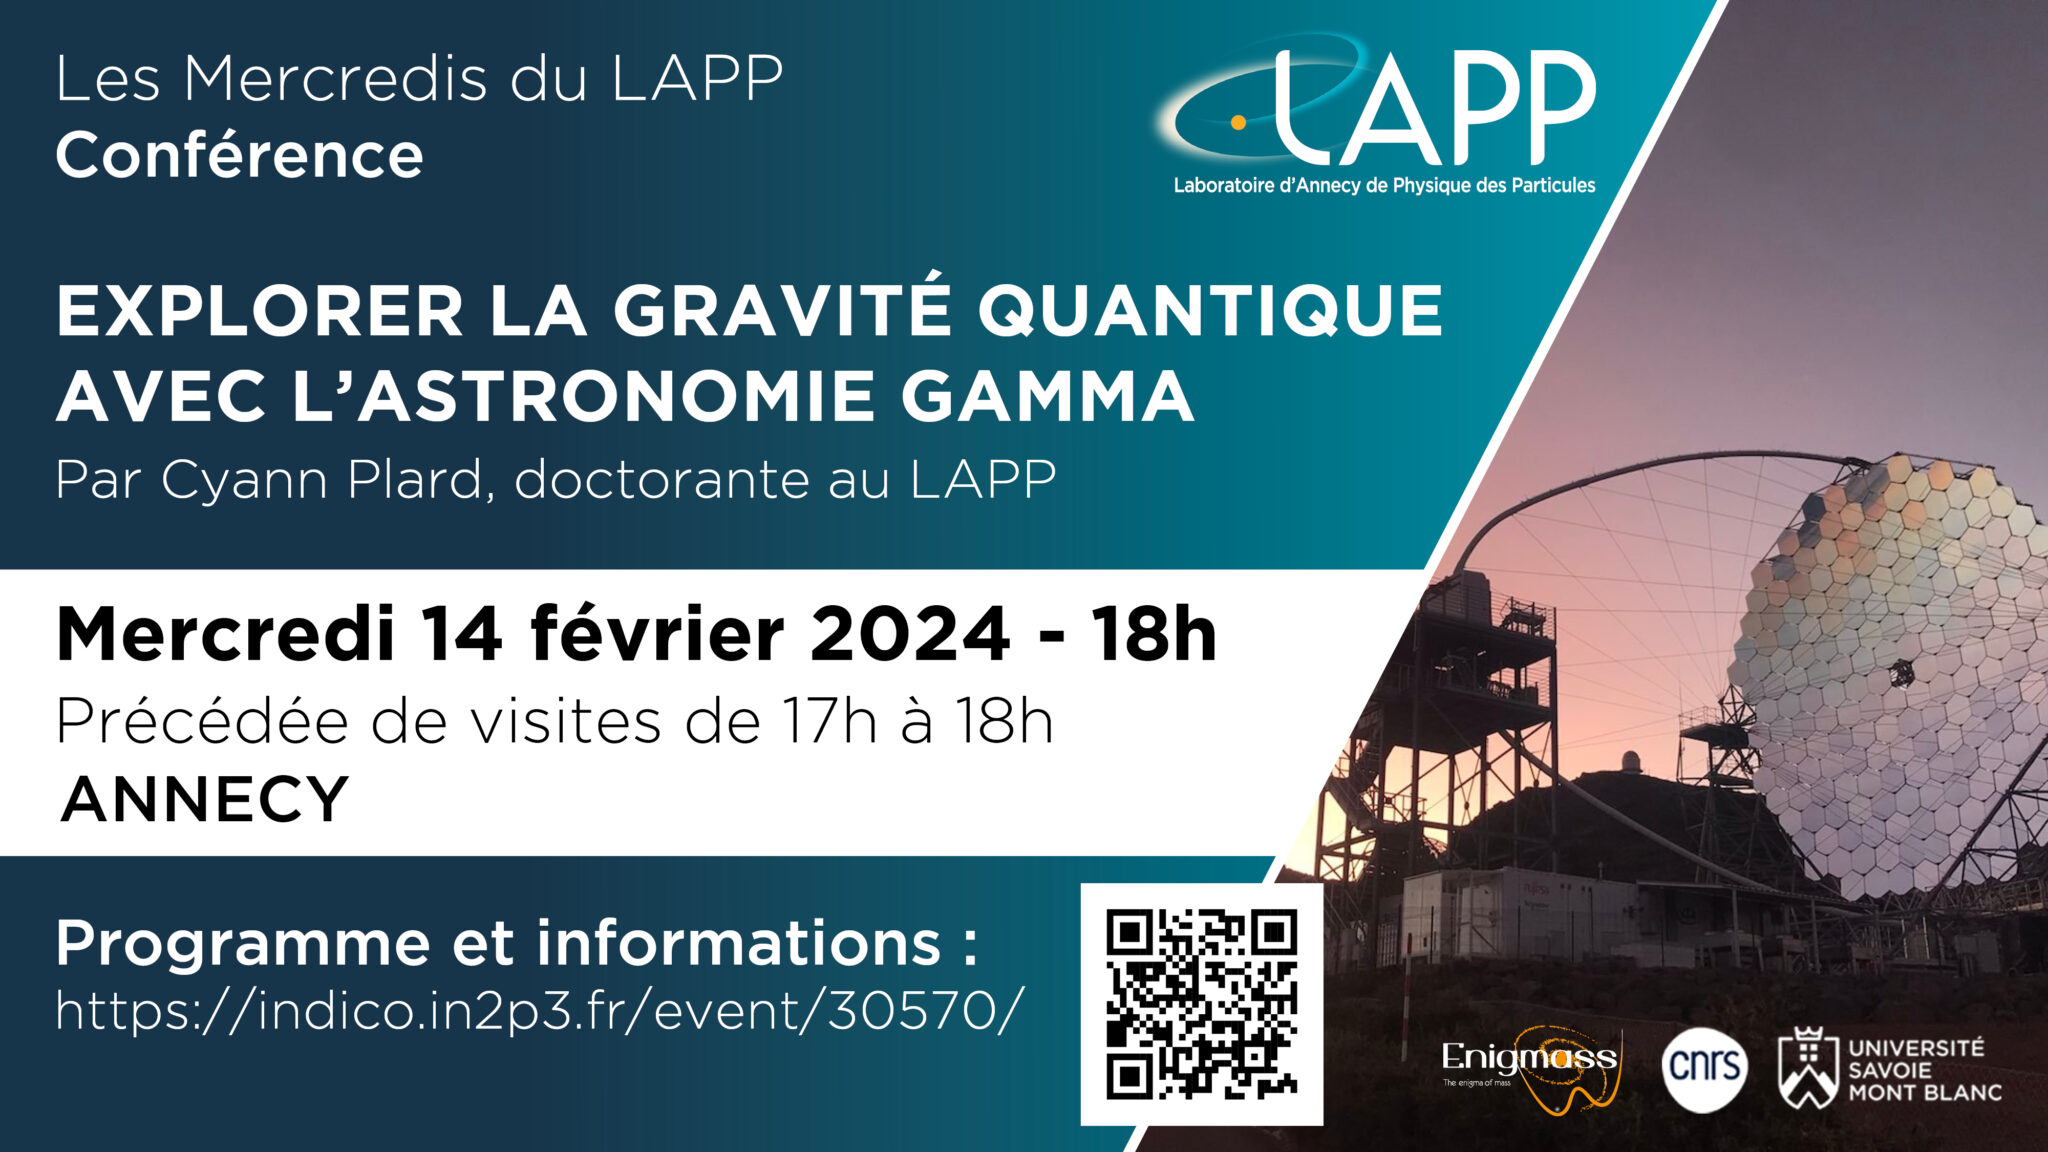 Mercredis du LAPP - Conférence Explorer la gravité quantique avec l'astronomie gamma